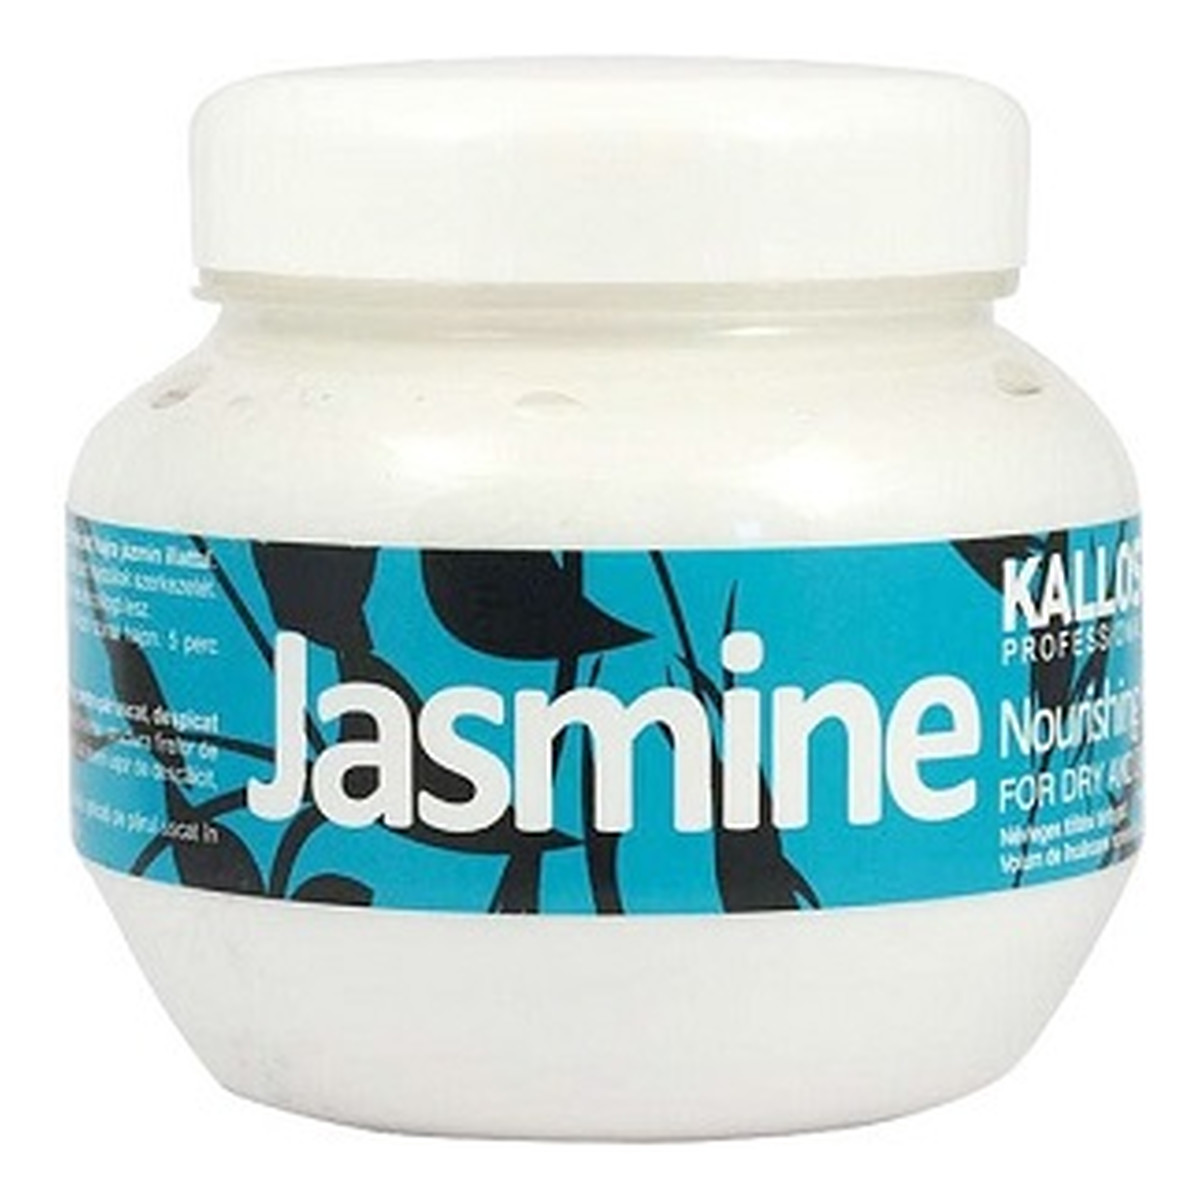 Kallos Jasmine Nourishing Hair Mask odżywcza maska jaśminowa do włosów suchych i zniszczonych 275ml